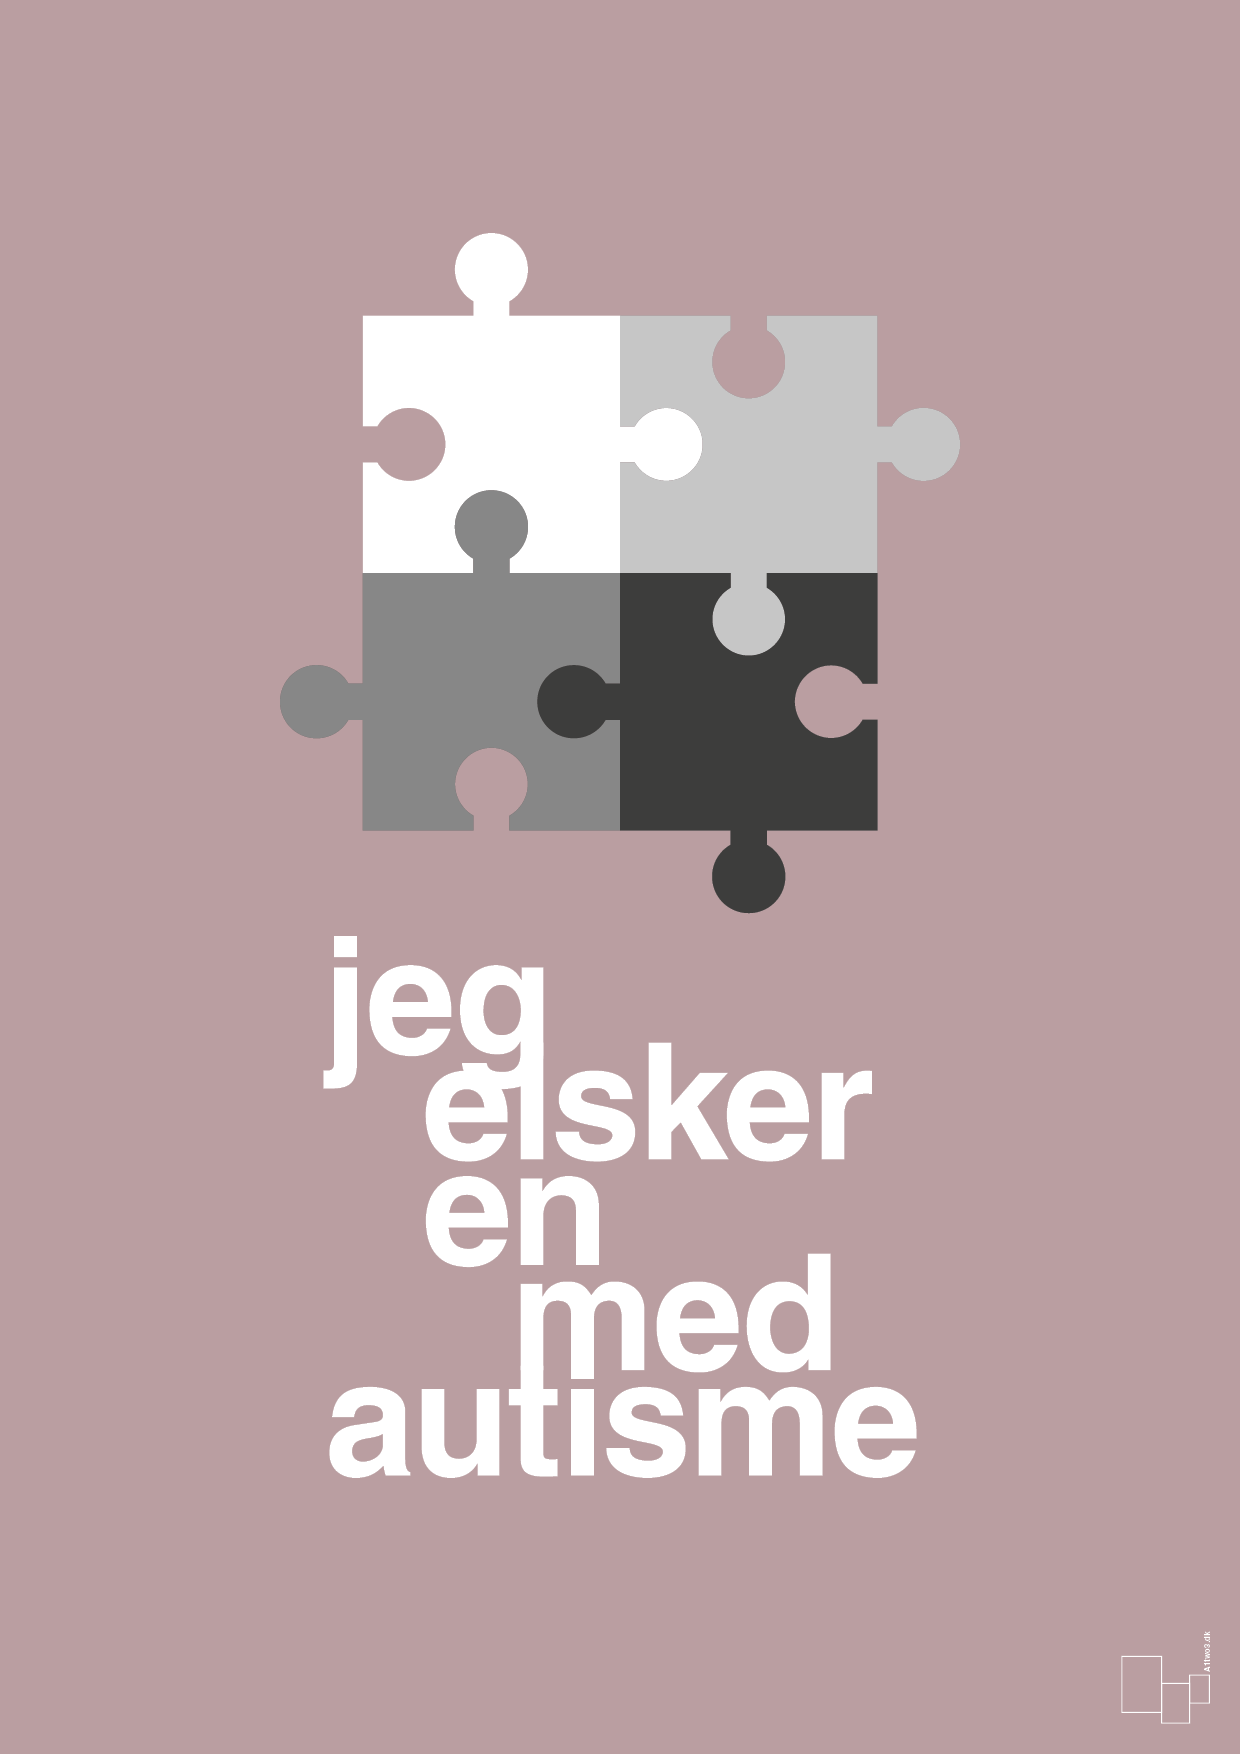 jeg elsker en med autisme - Plakat med Samfund i Light Rose